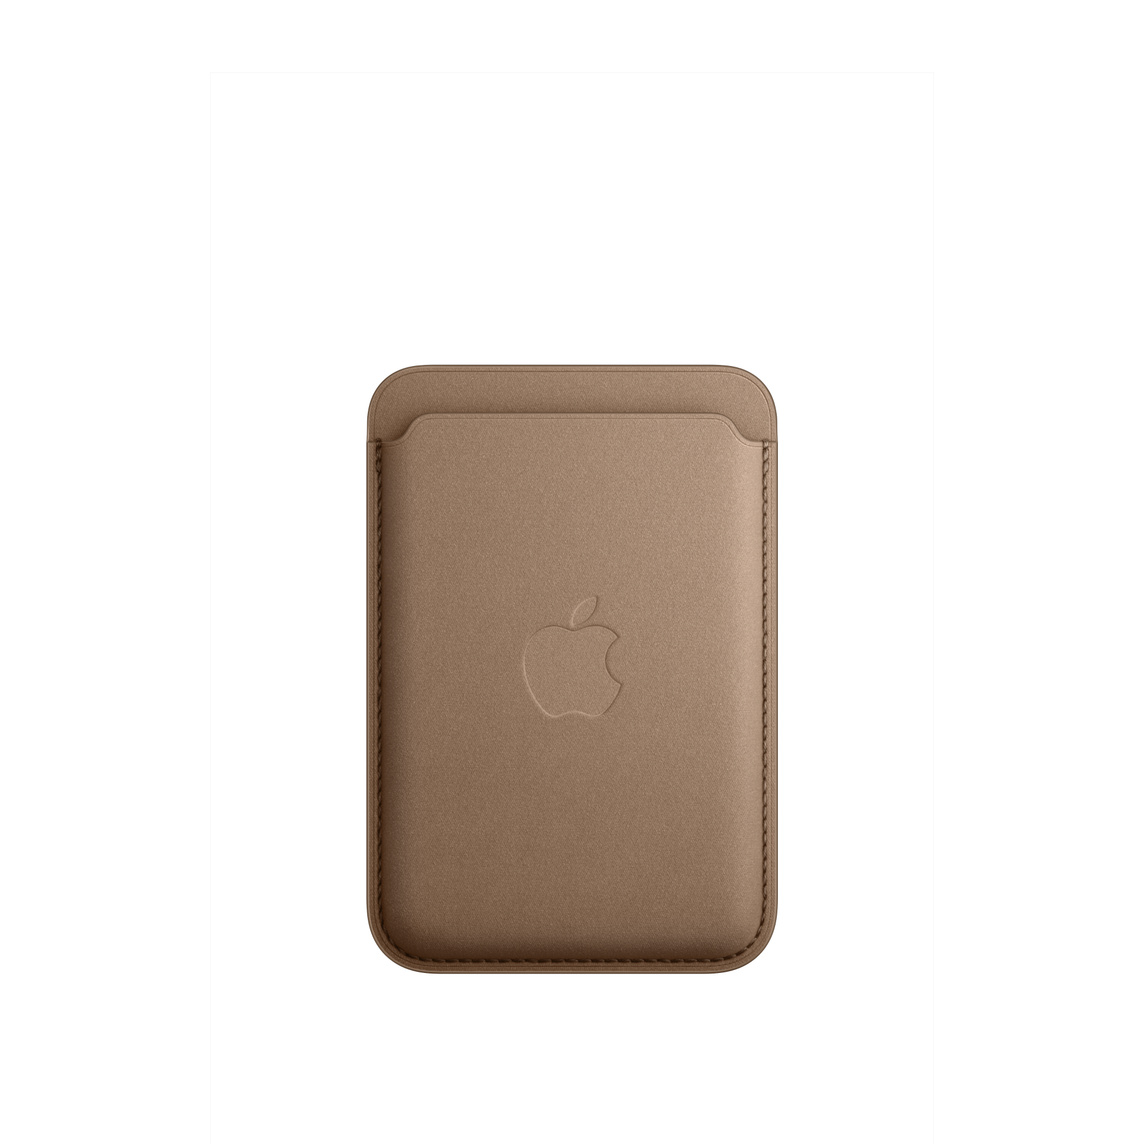 토프 색상의 MagSafe형 iPhone 파인우븐 카드지갑을 앞에서 바라본 모습. 상단의 카드 슬롯 입구와 중앙에 새겨진 Apple 로고가 보입니다.